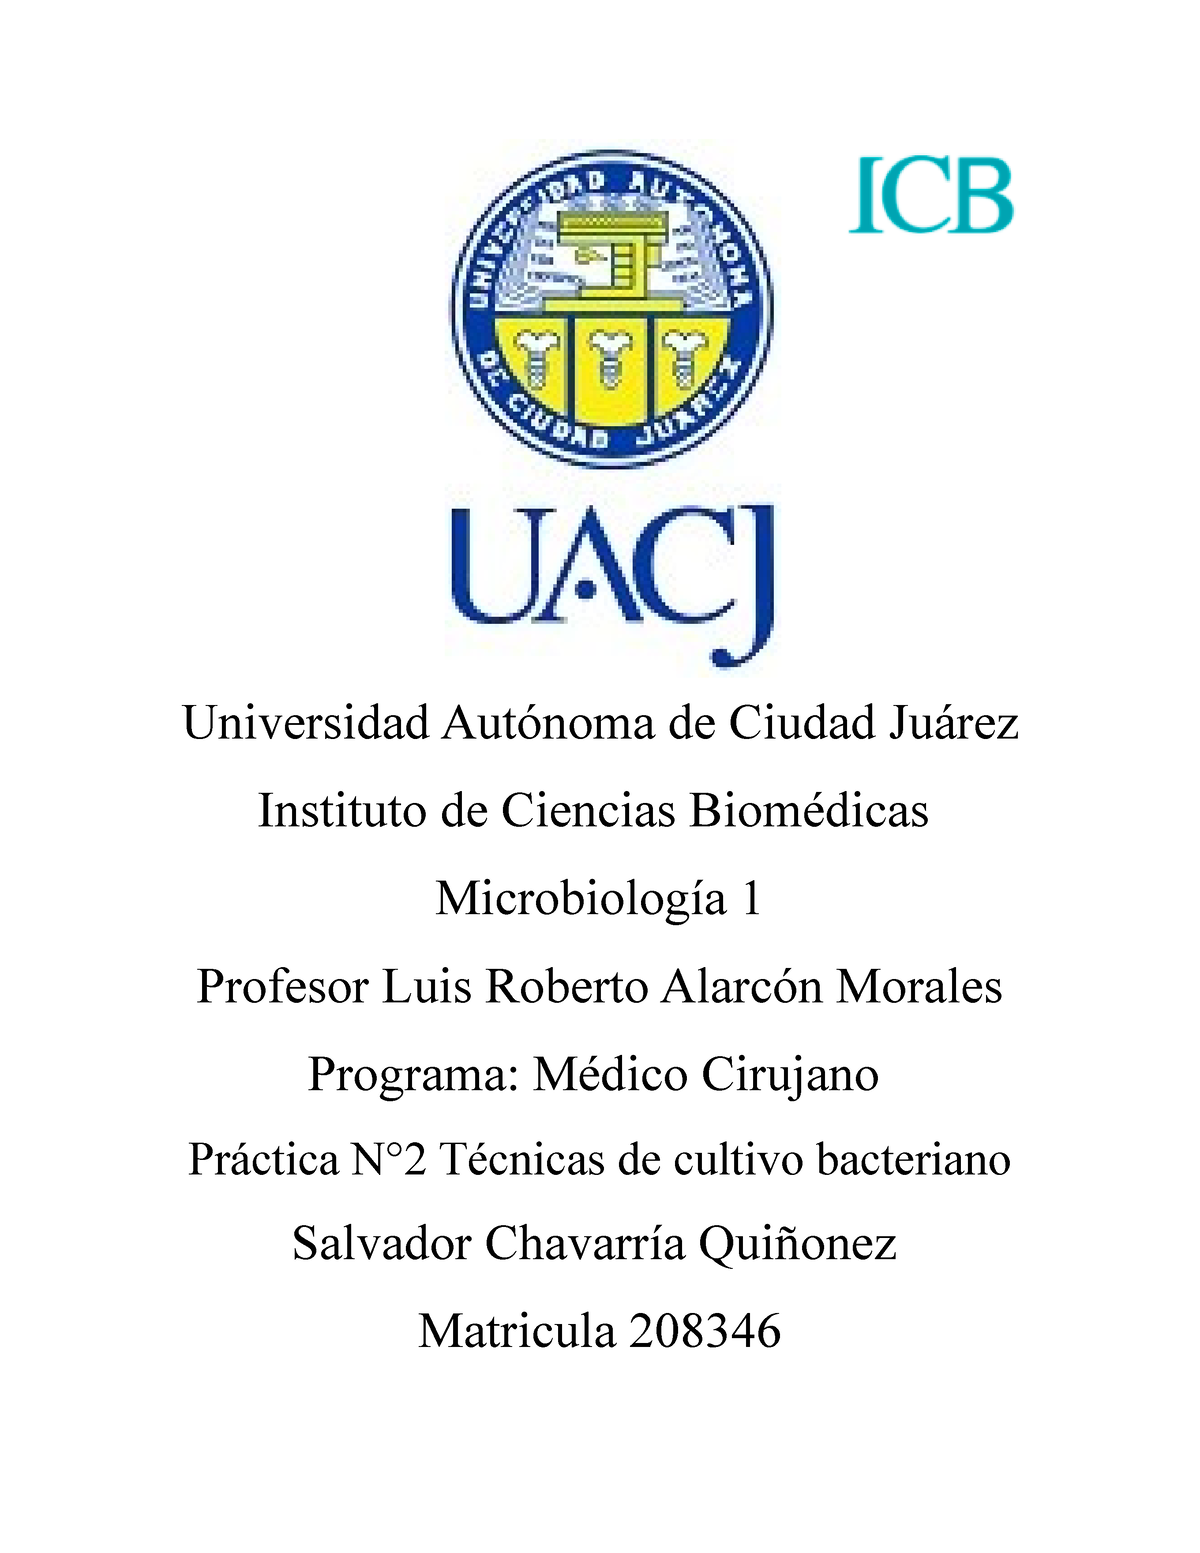 Practica 2 Micro 1 Universidad Autónoma De Ciudad Juárez Instituto De